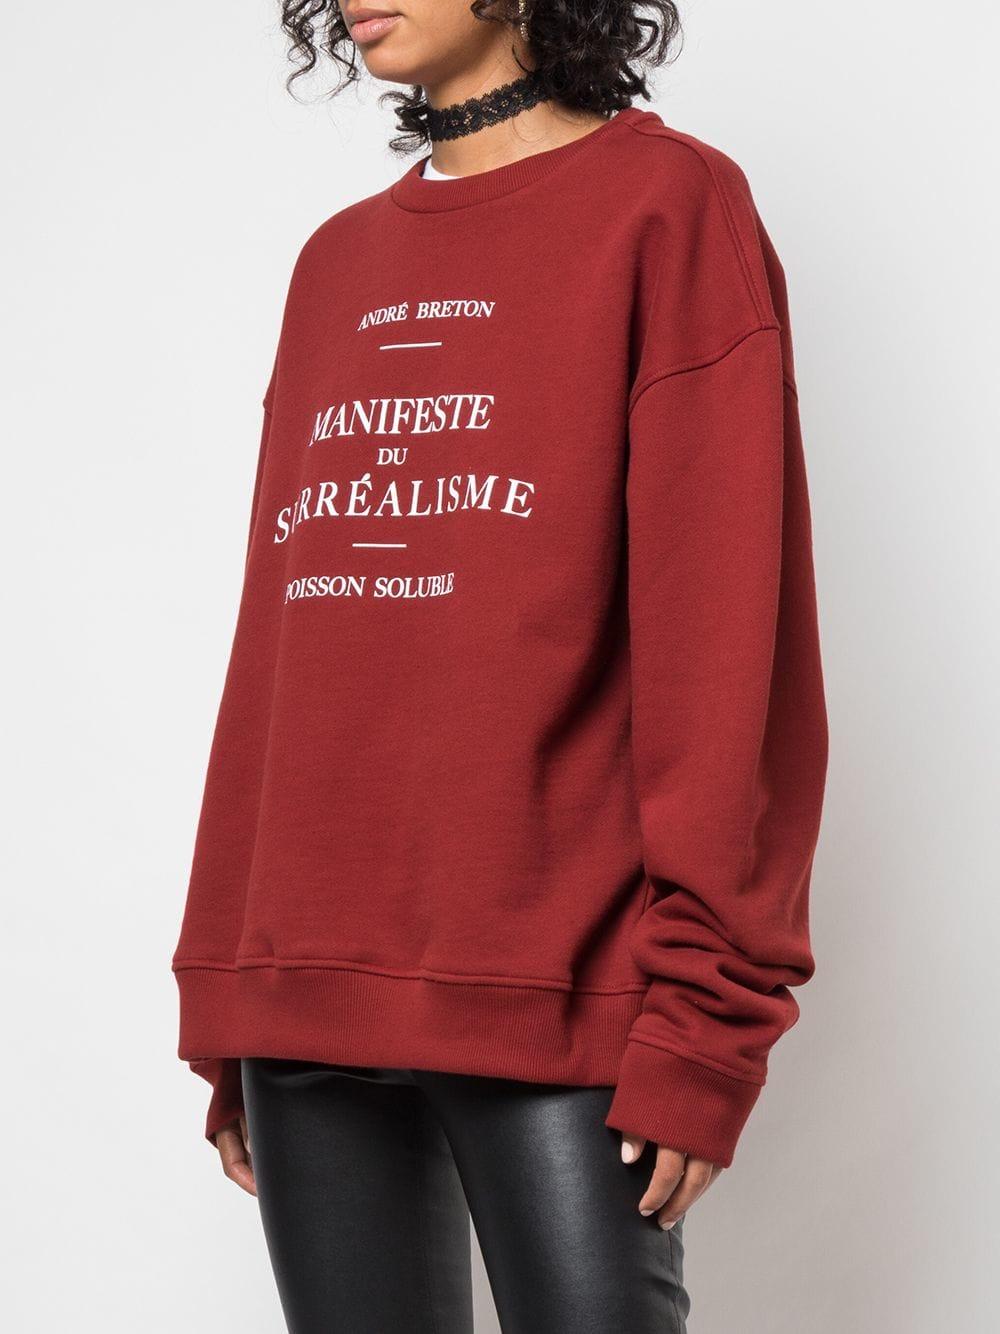 Enfants Riches Deprimes Cotton Manifeste Du Surréalisme Sweatshirt in Red -  Lyst